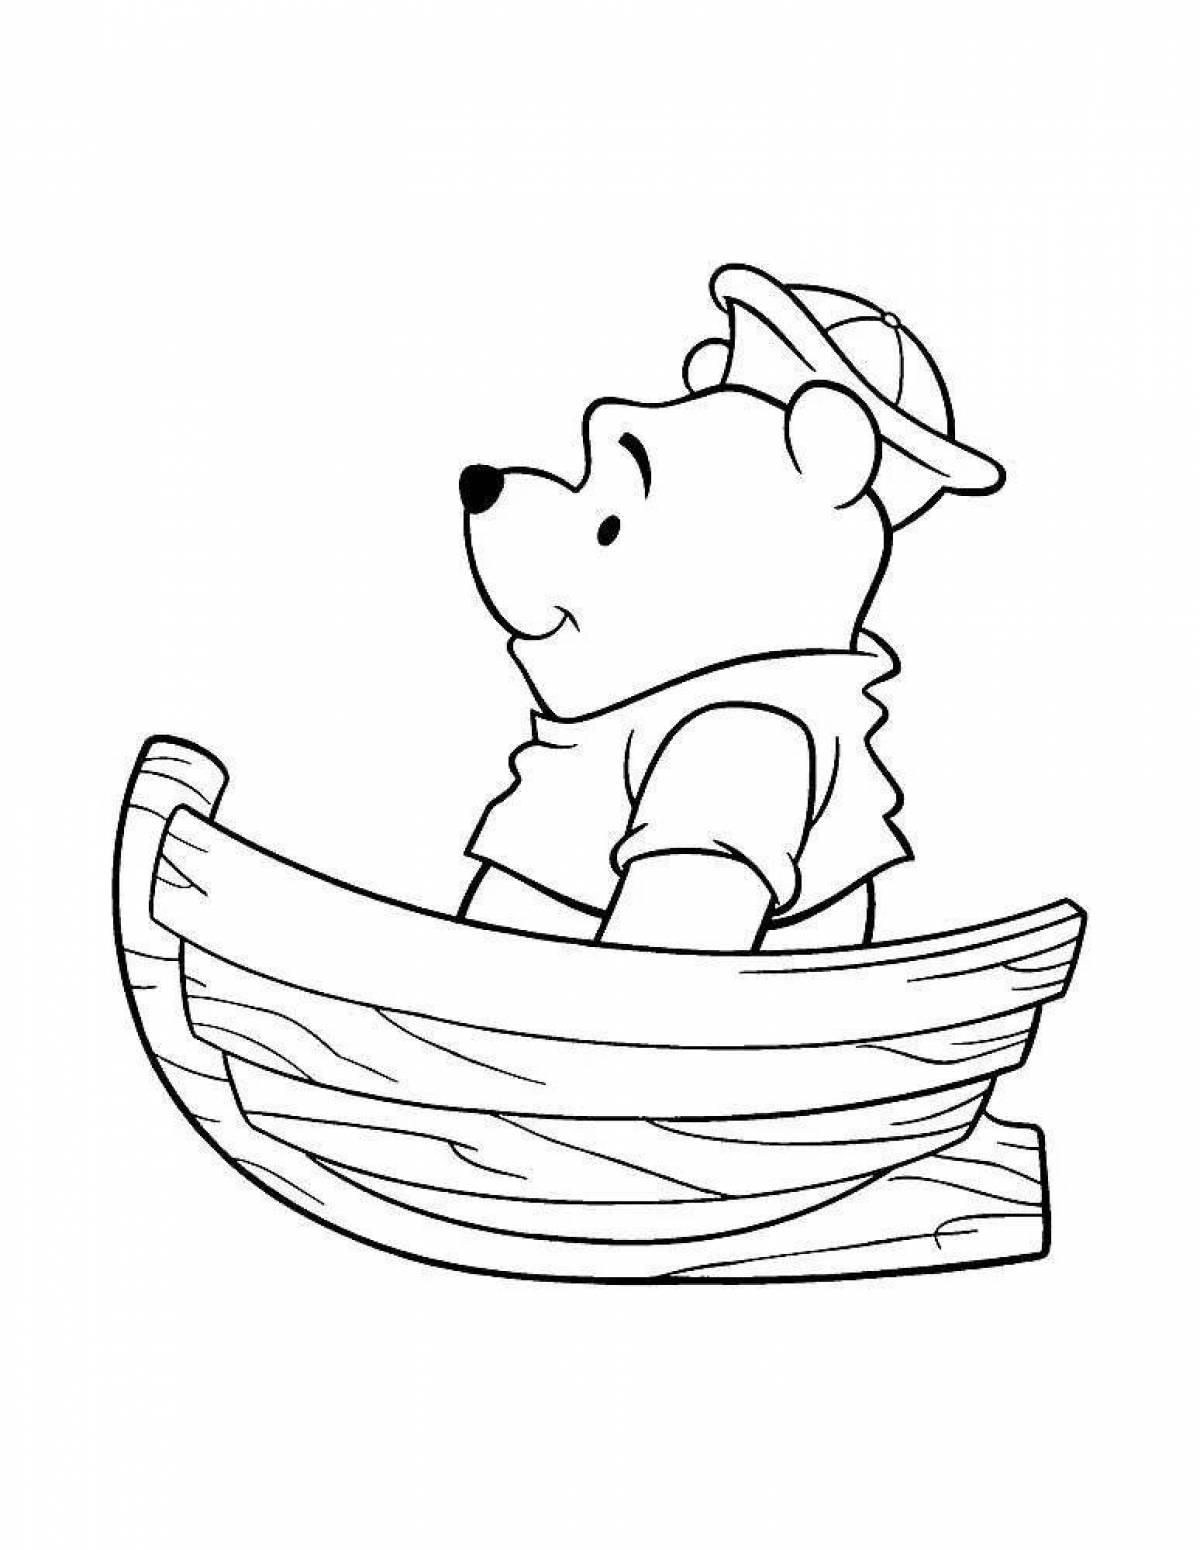 Boat for children #5